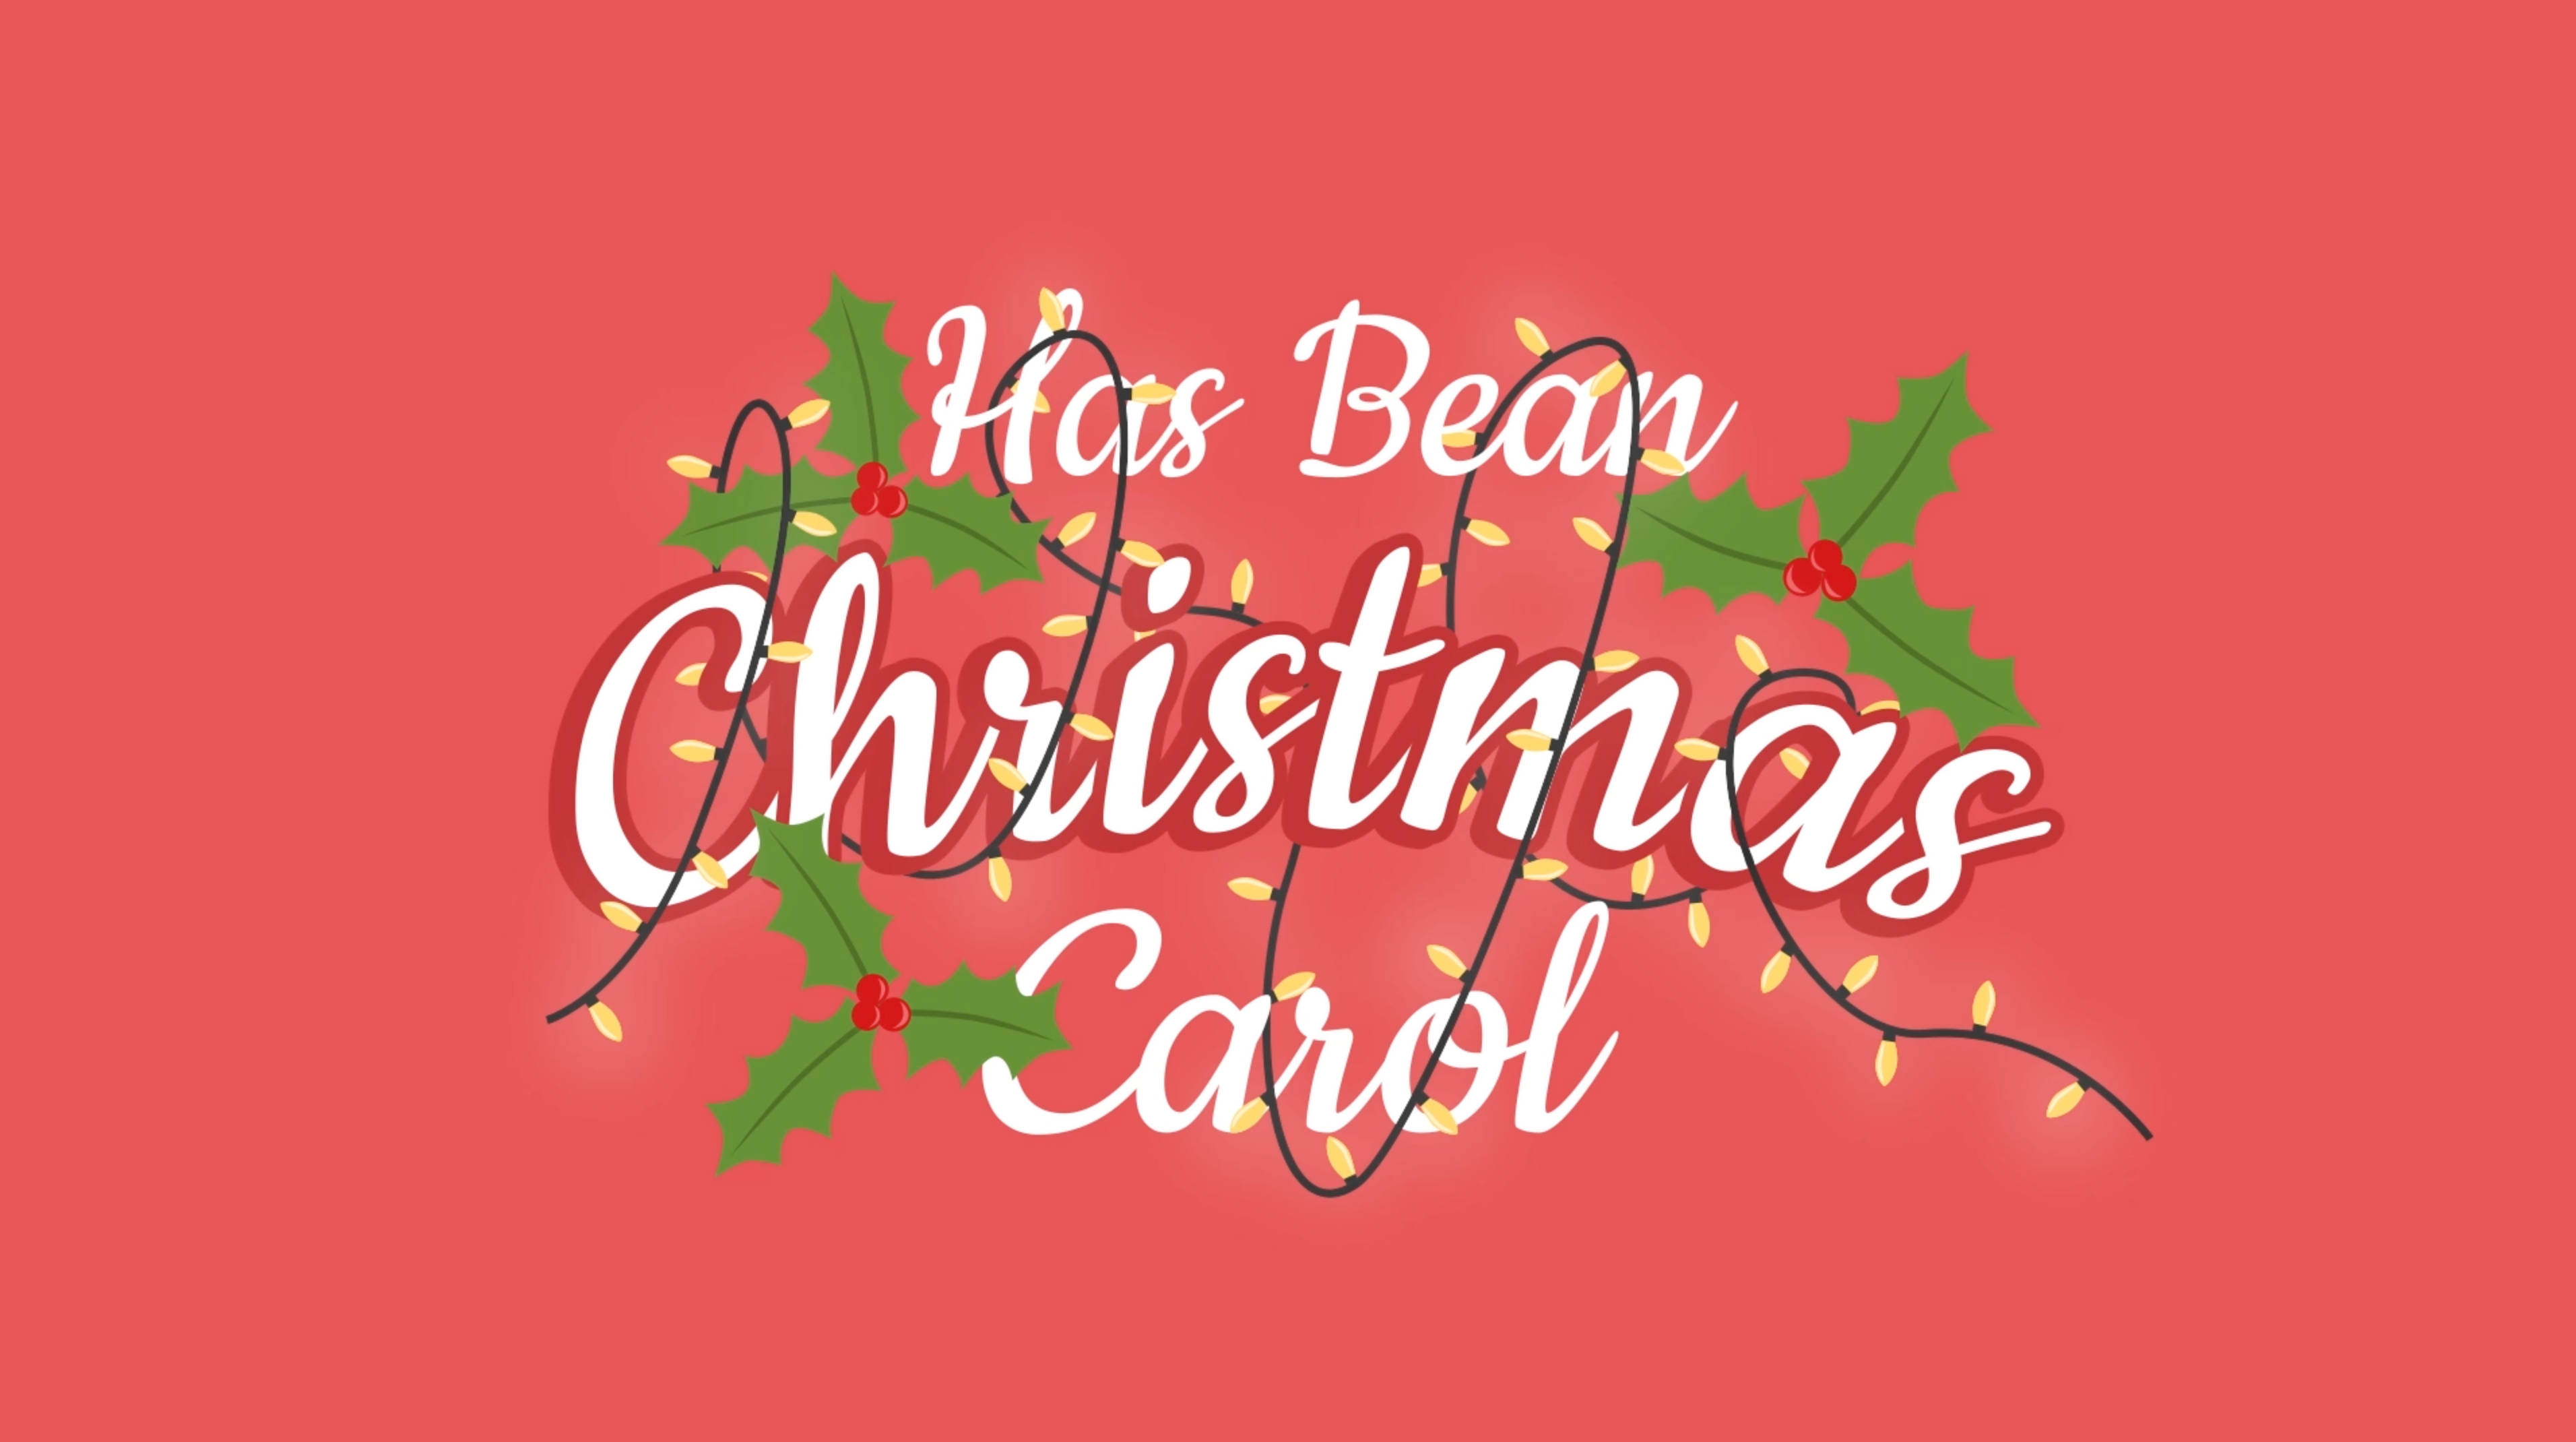 Has Bean Christmas Card 2013